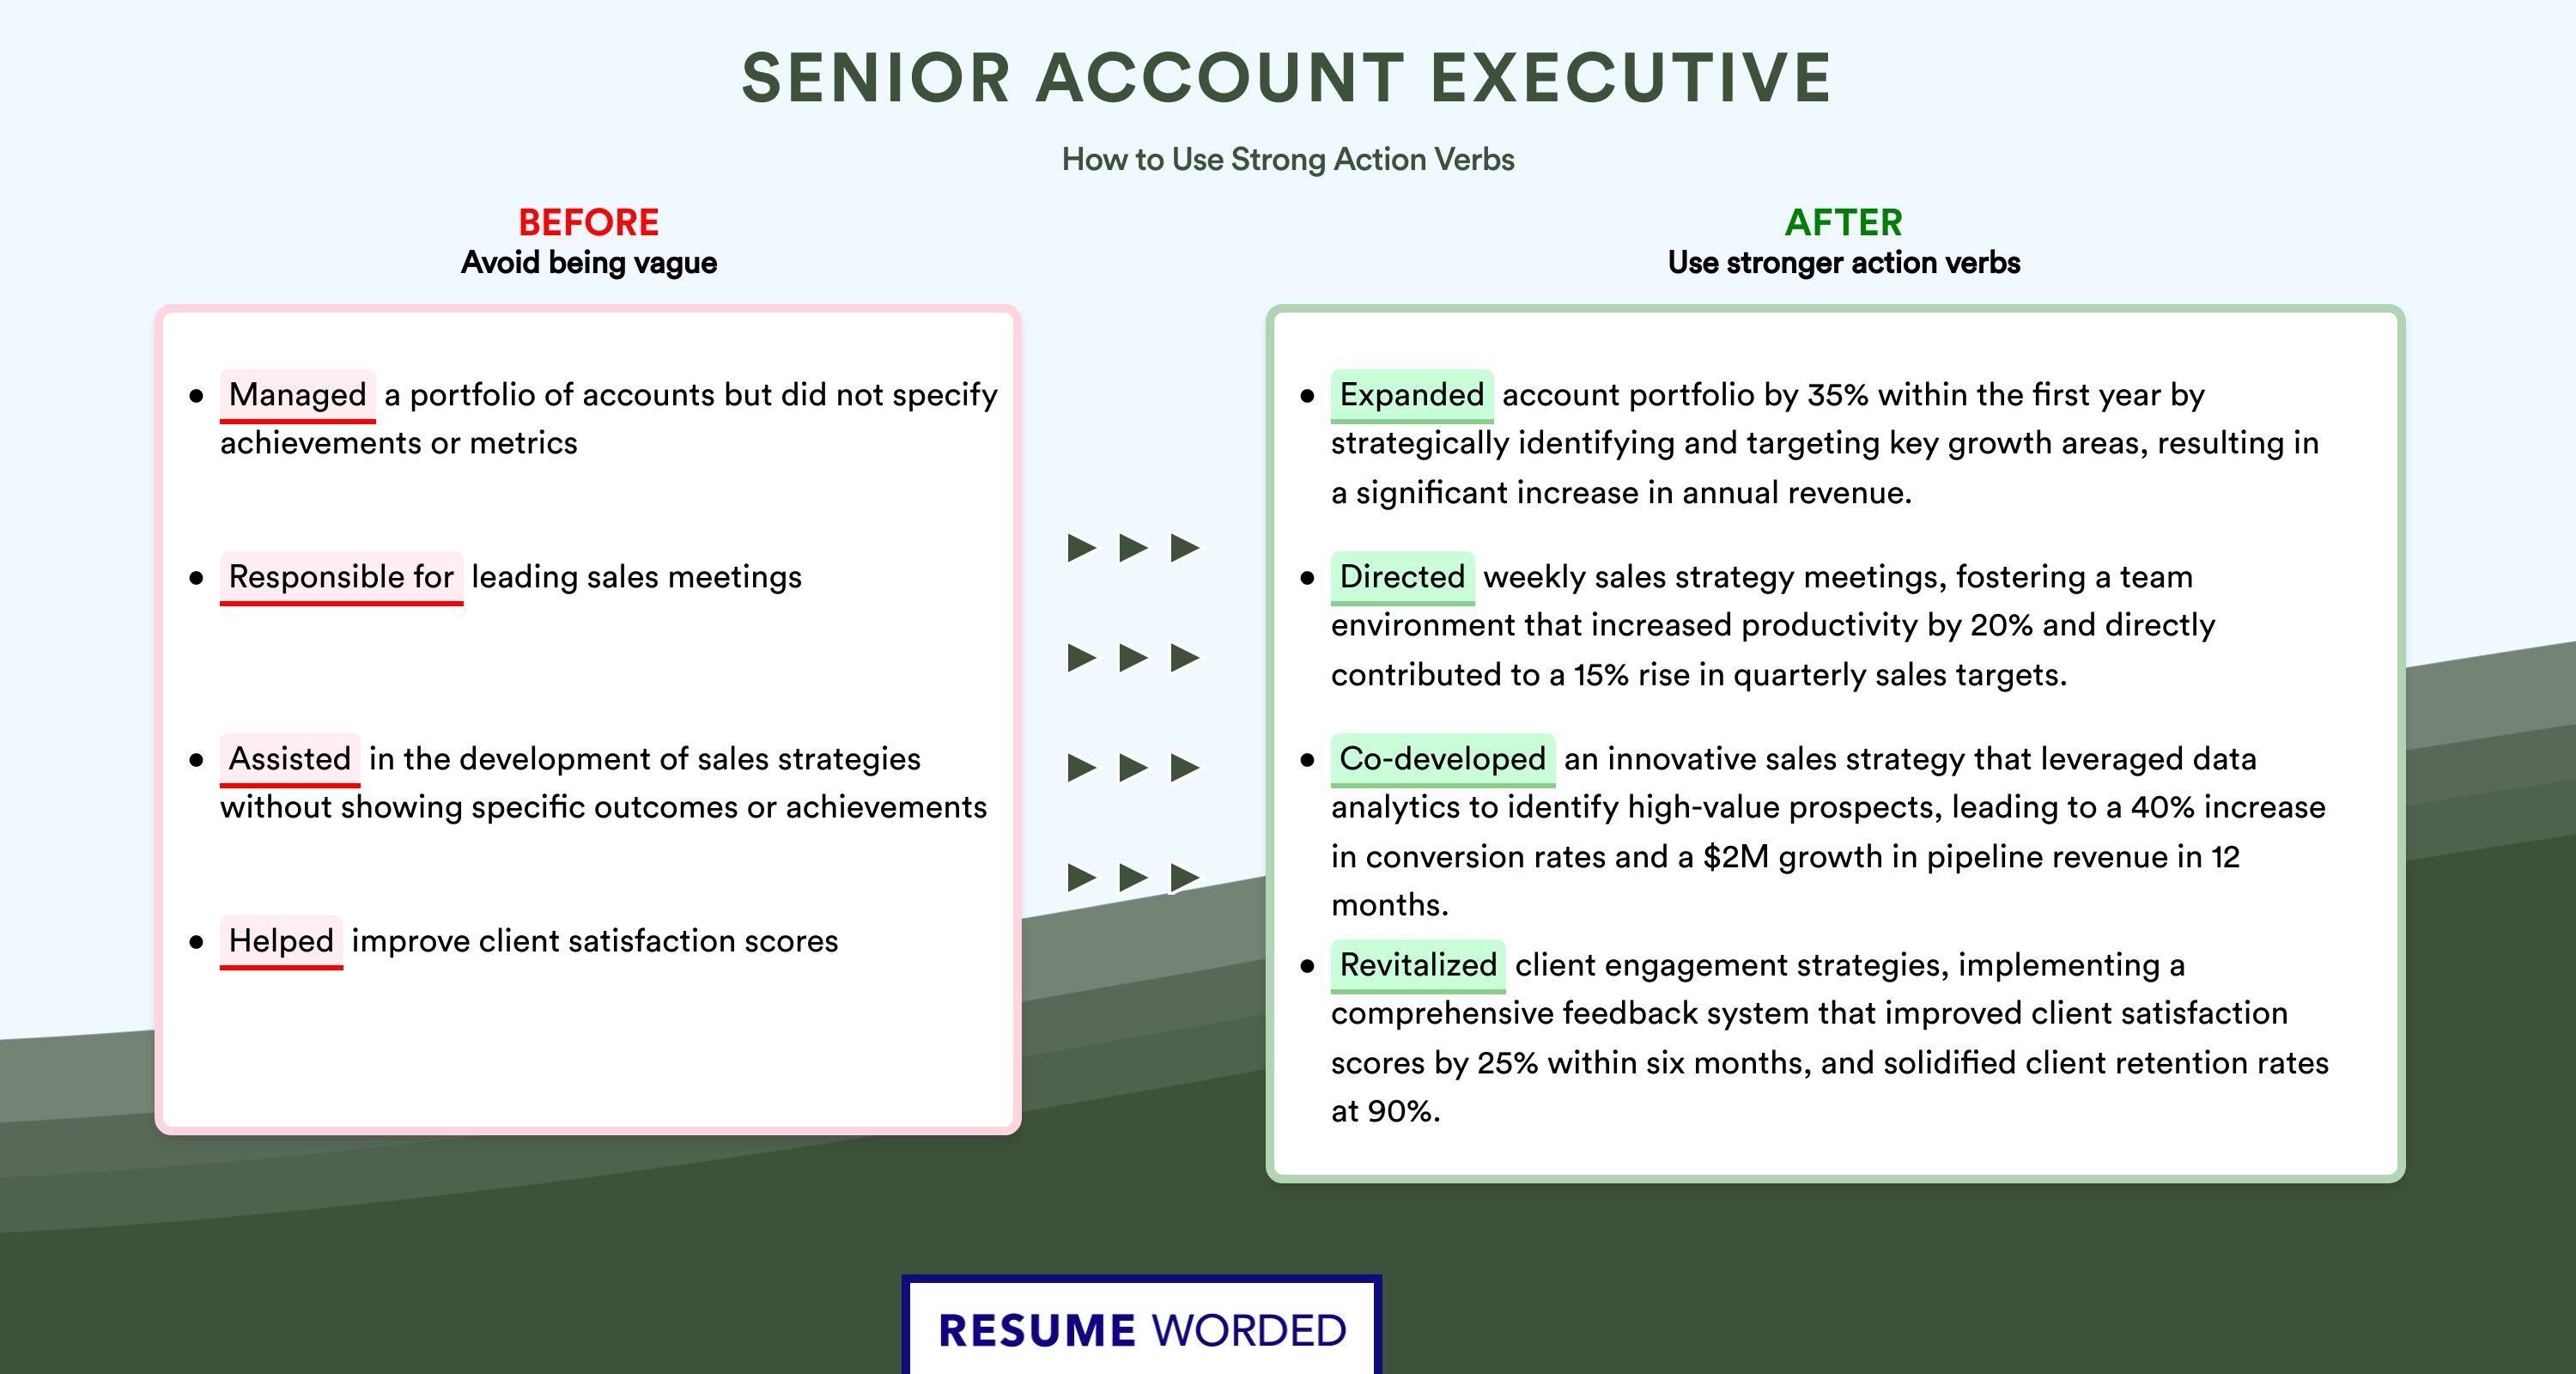 Action Verbs for Senior Account Executive